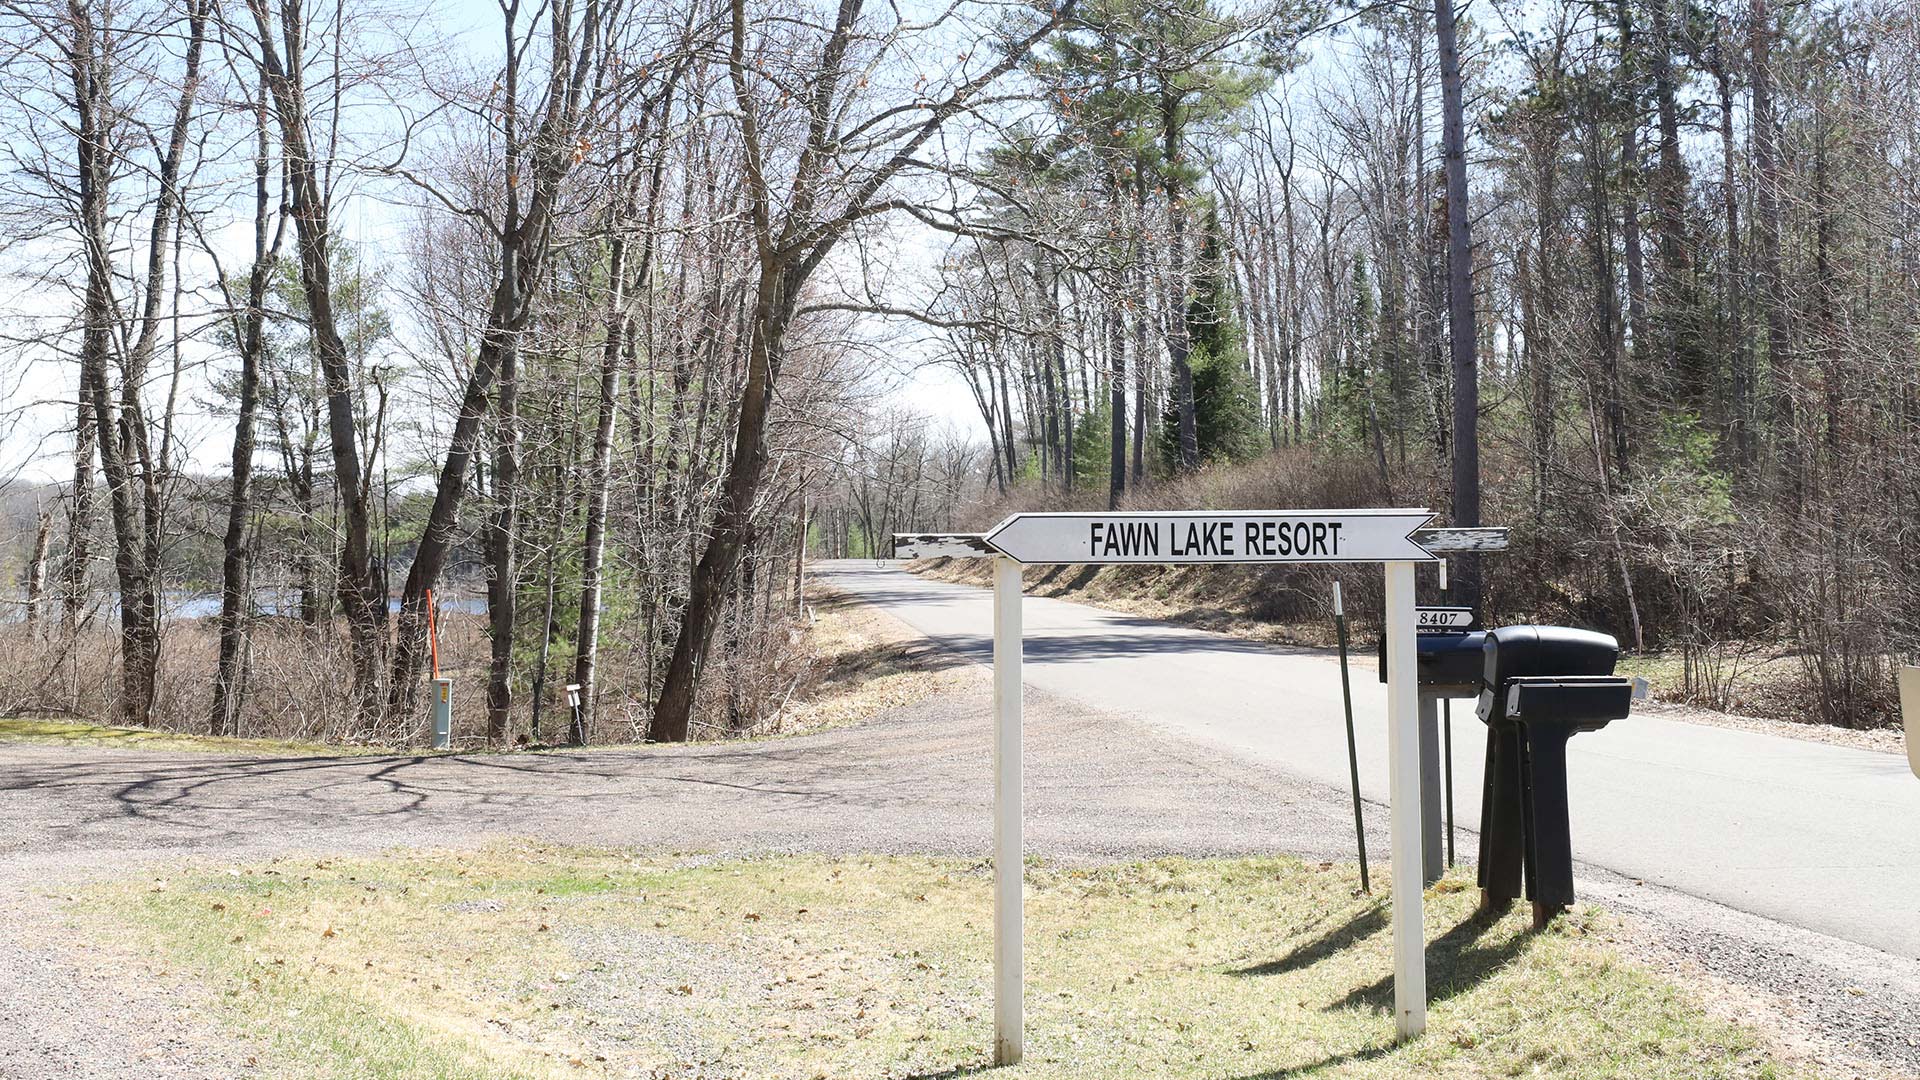 Fawn Lake Resort sign